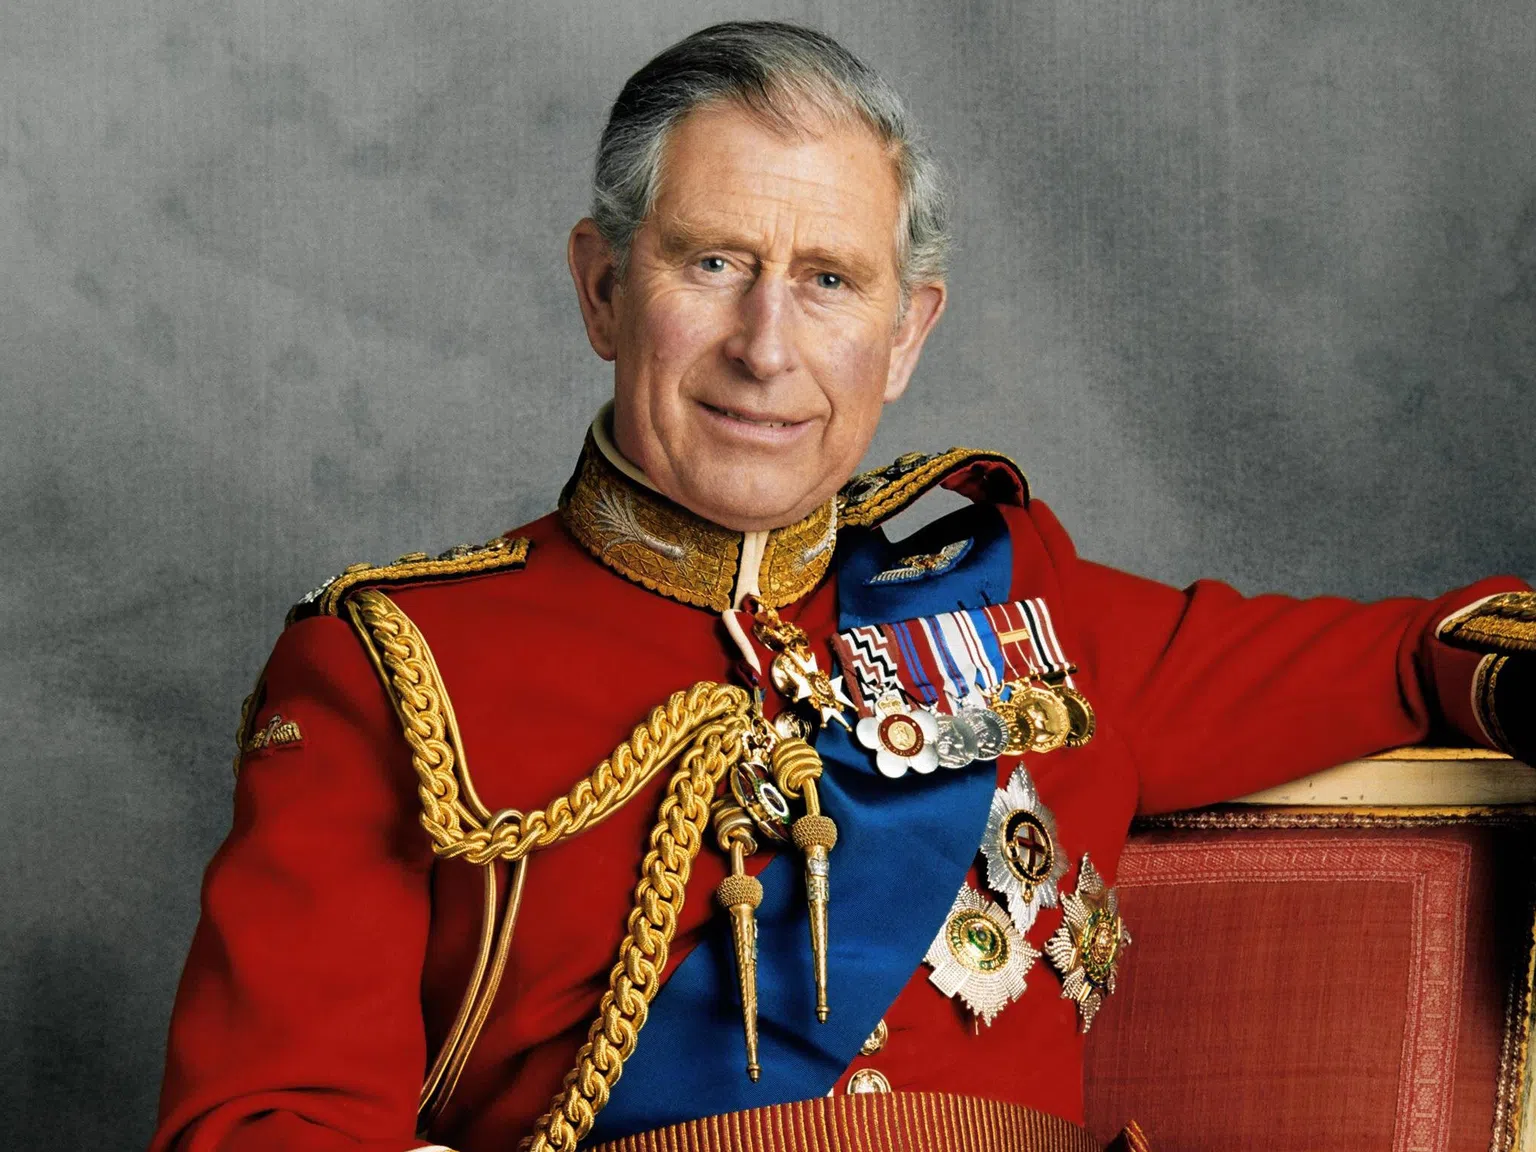 Сдържан и надежден, но недолюбван: Образът на новия крал Чарлз III през погледа на британците